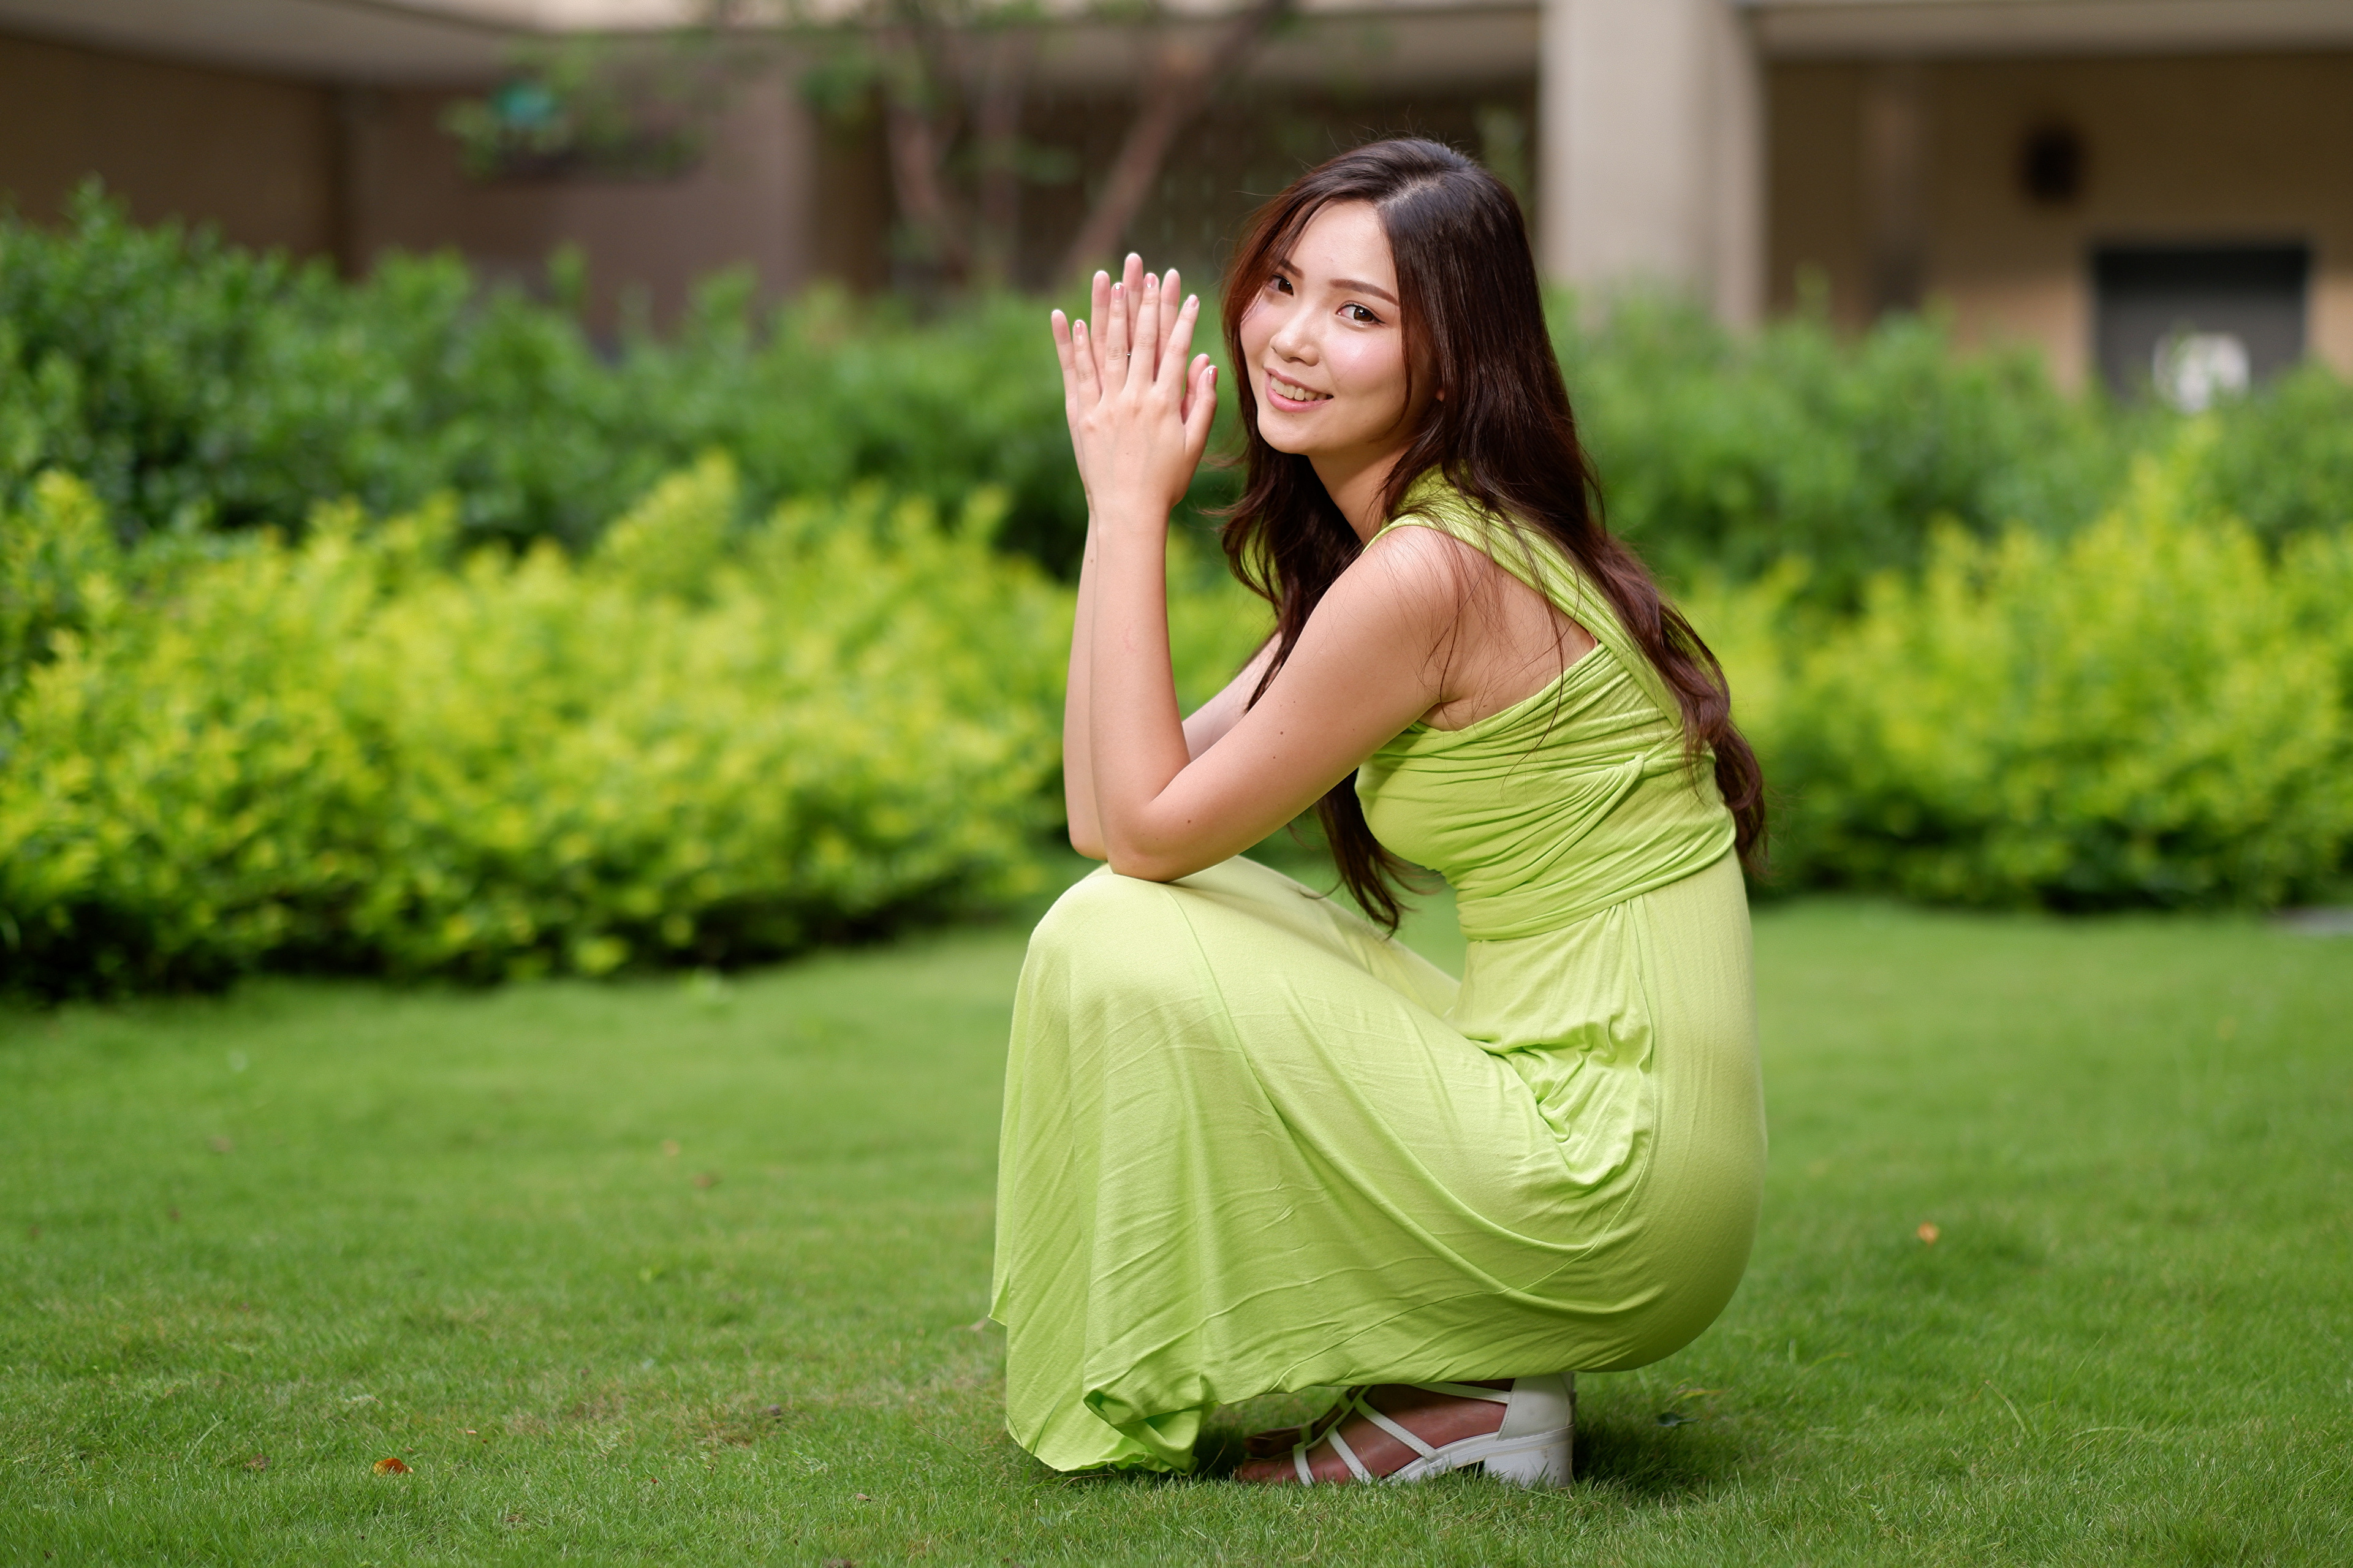 Asian Women Model Long Hair Brunette Green Dress Grass Bushes Building Depth Of Field 3840x2559